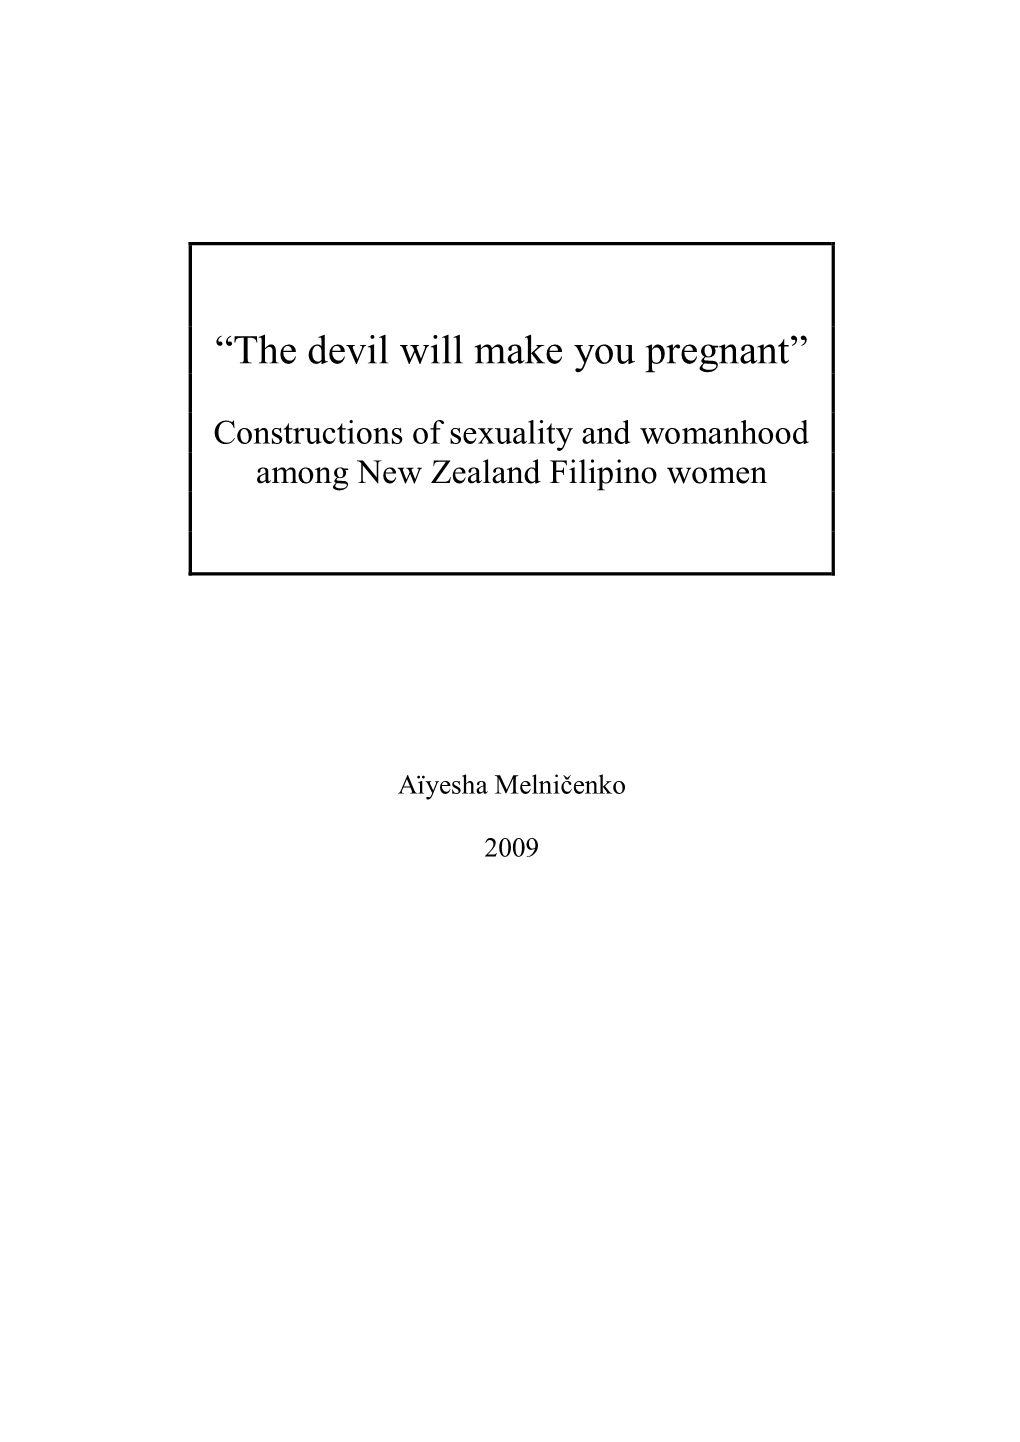 “The Devil Will Make You Pregnant”